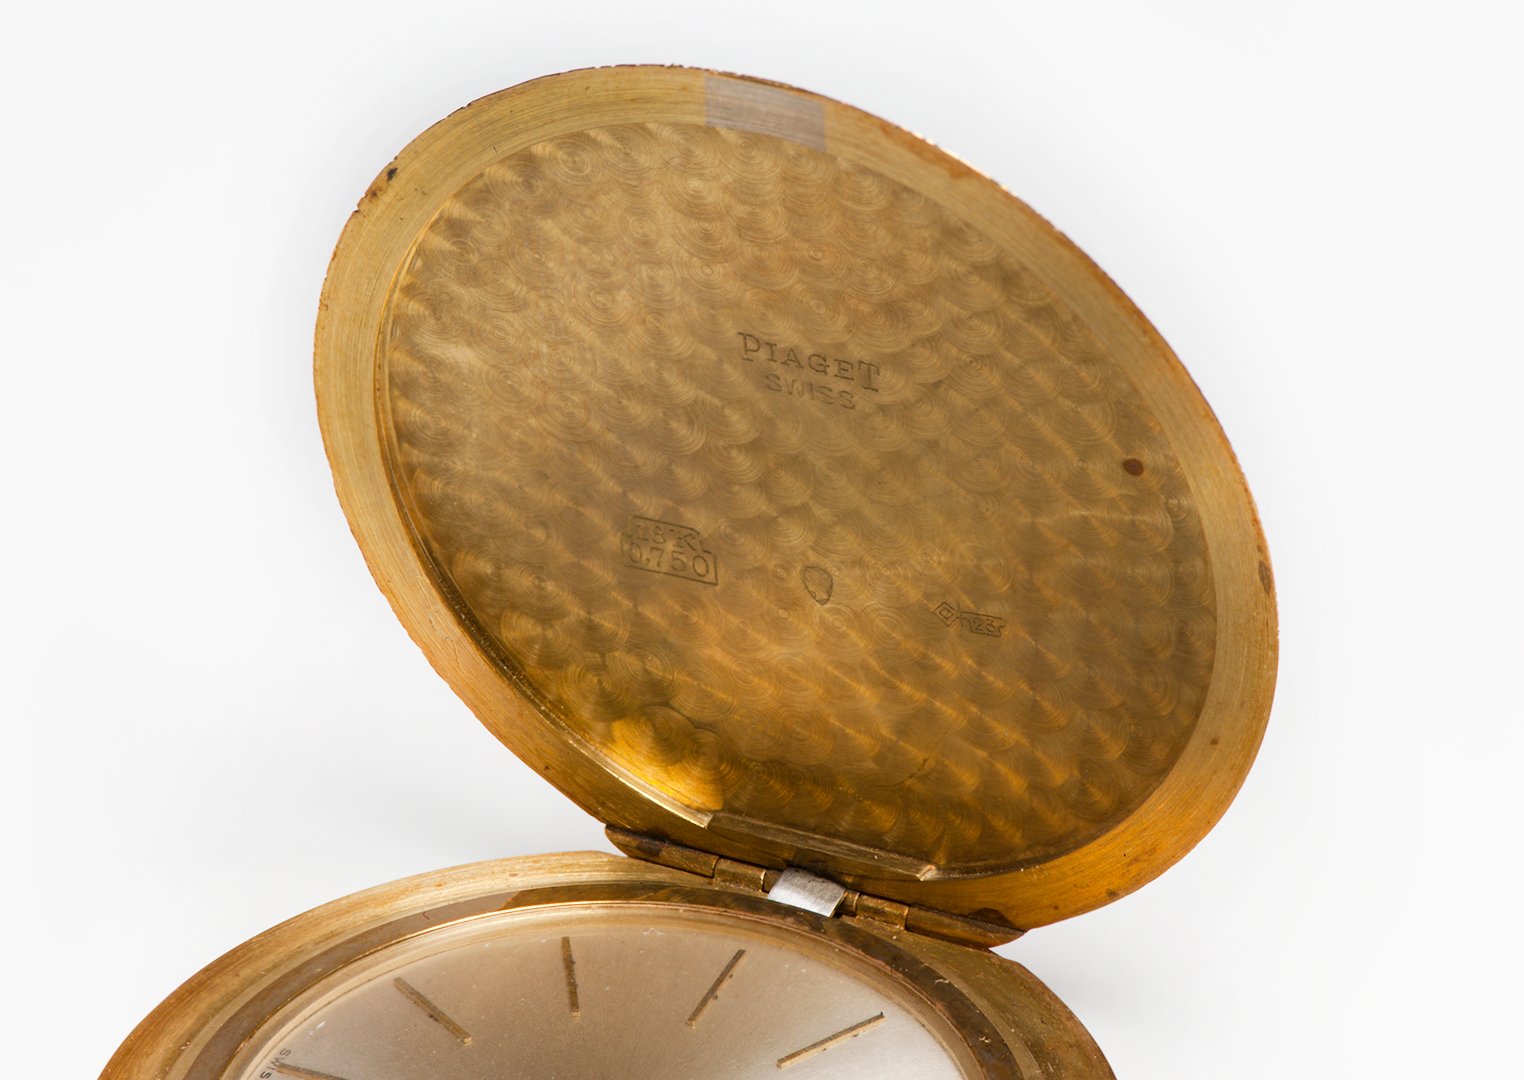 Vintage Piaget 18K Gold Pocket Watch